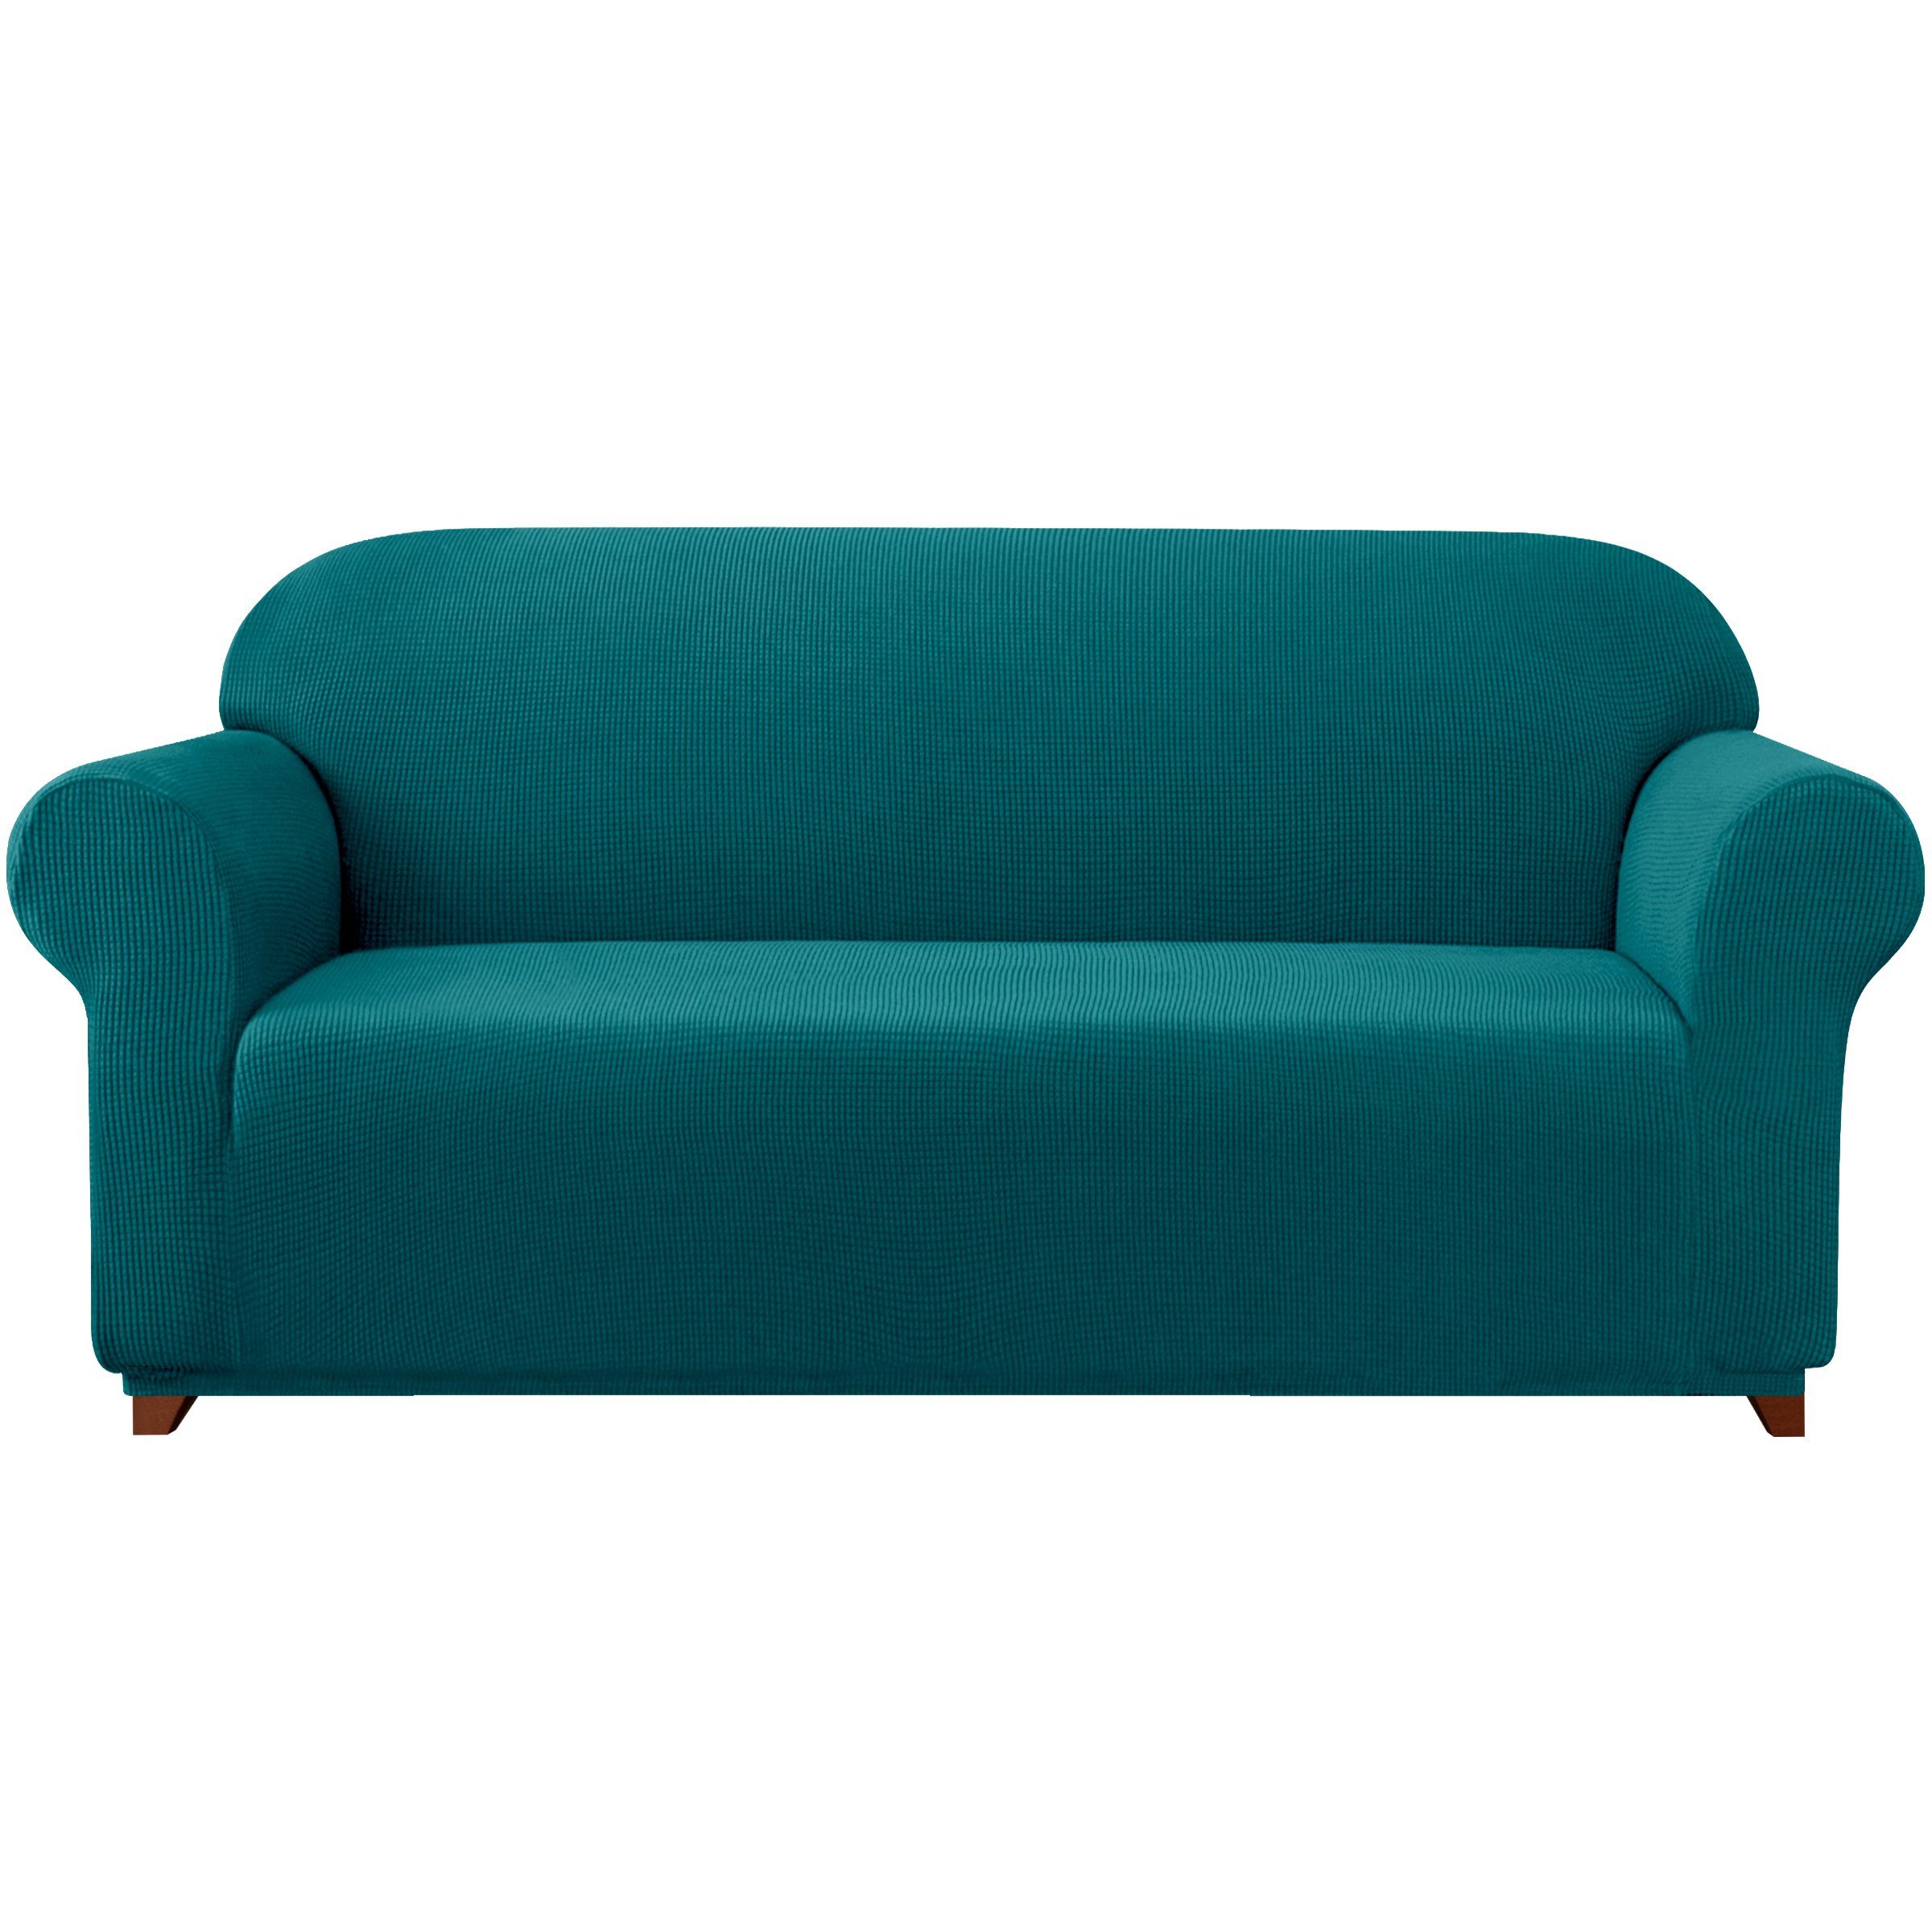 Sofahusse 2/3/4 Sitzer Sofabezug, SUBRTEX, mit dezentem Muster Blaugrün